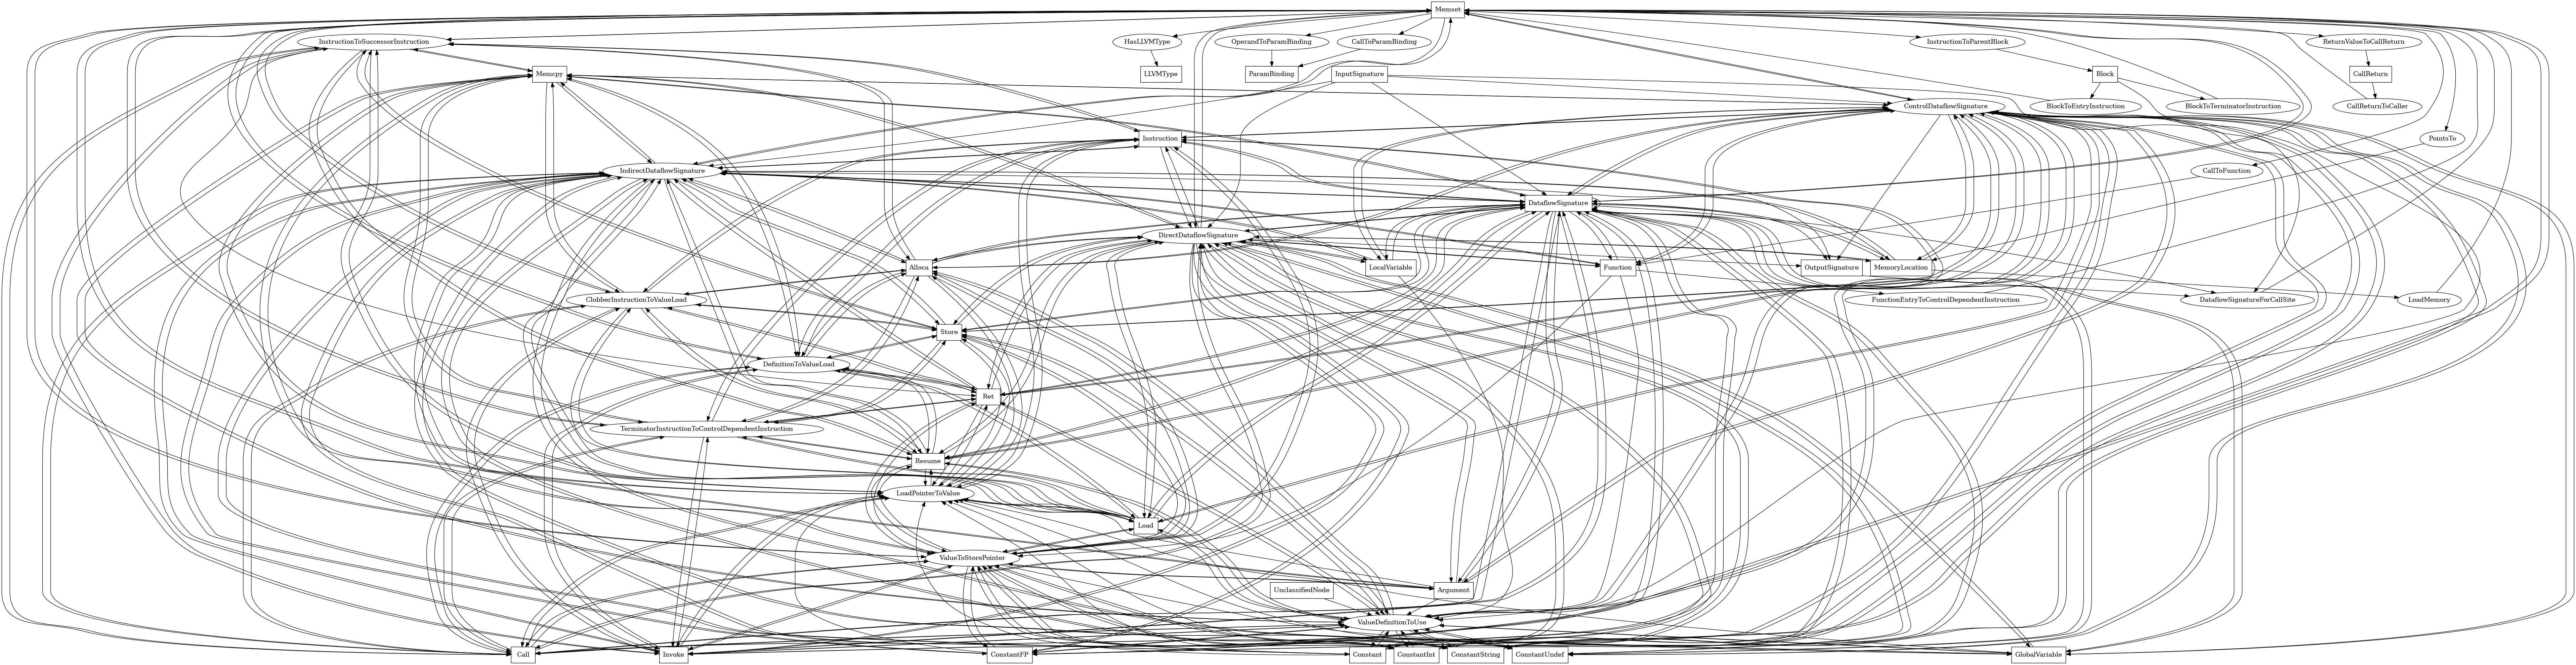 Entity-relationship diagram for Memset nodes